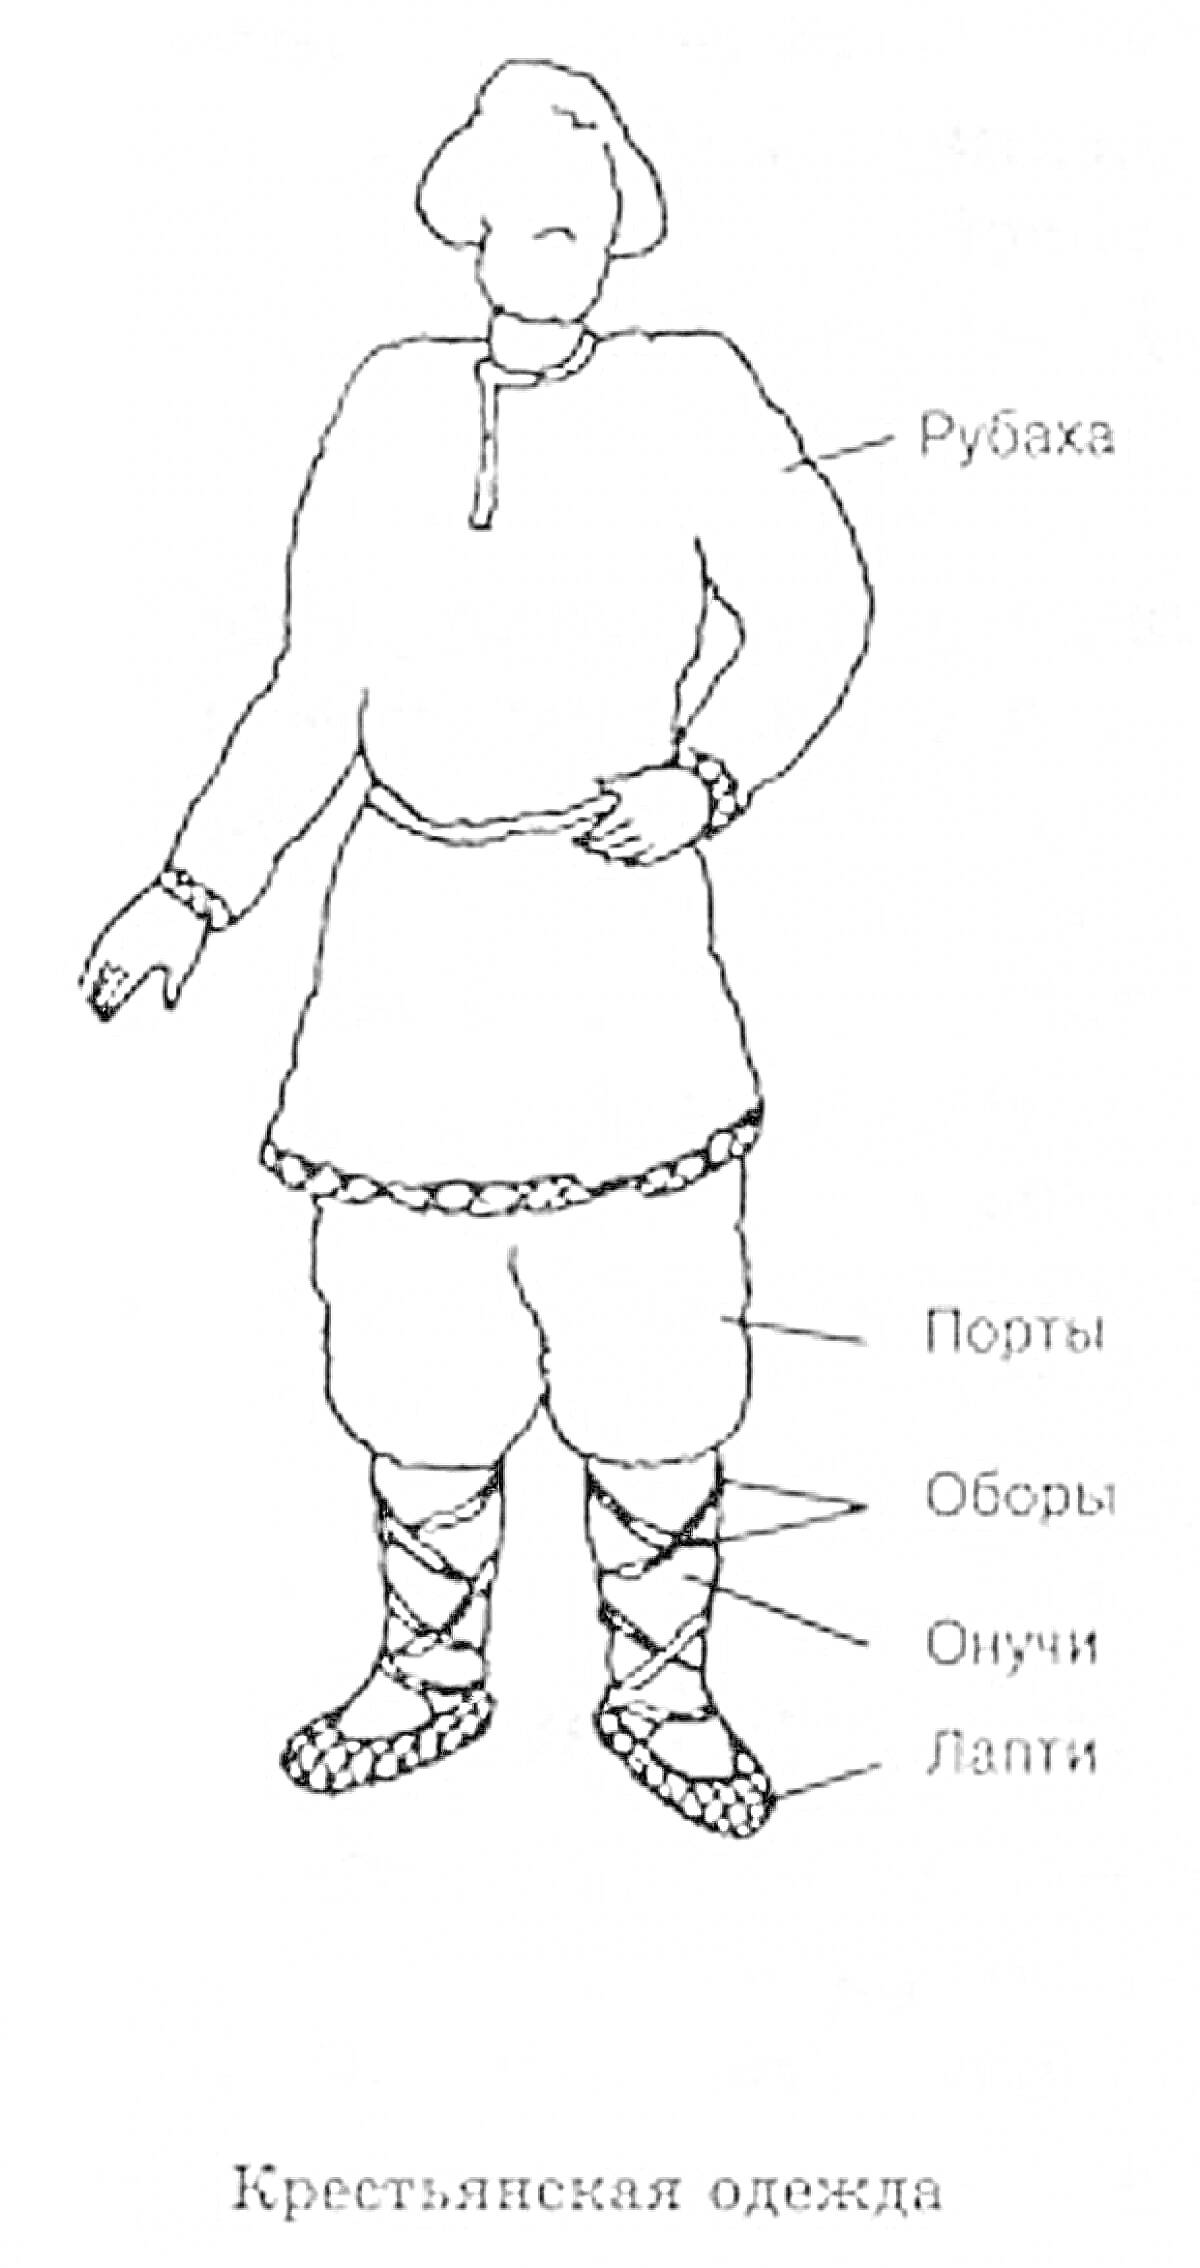 Раскраска Крестьянская одежда (рубаха, порты, оборы, онучи, лапти)